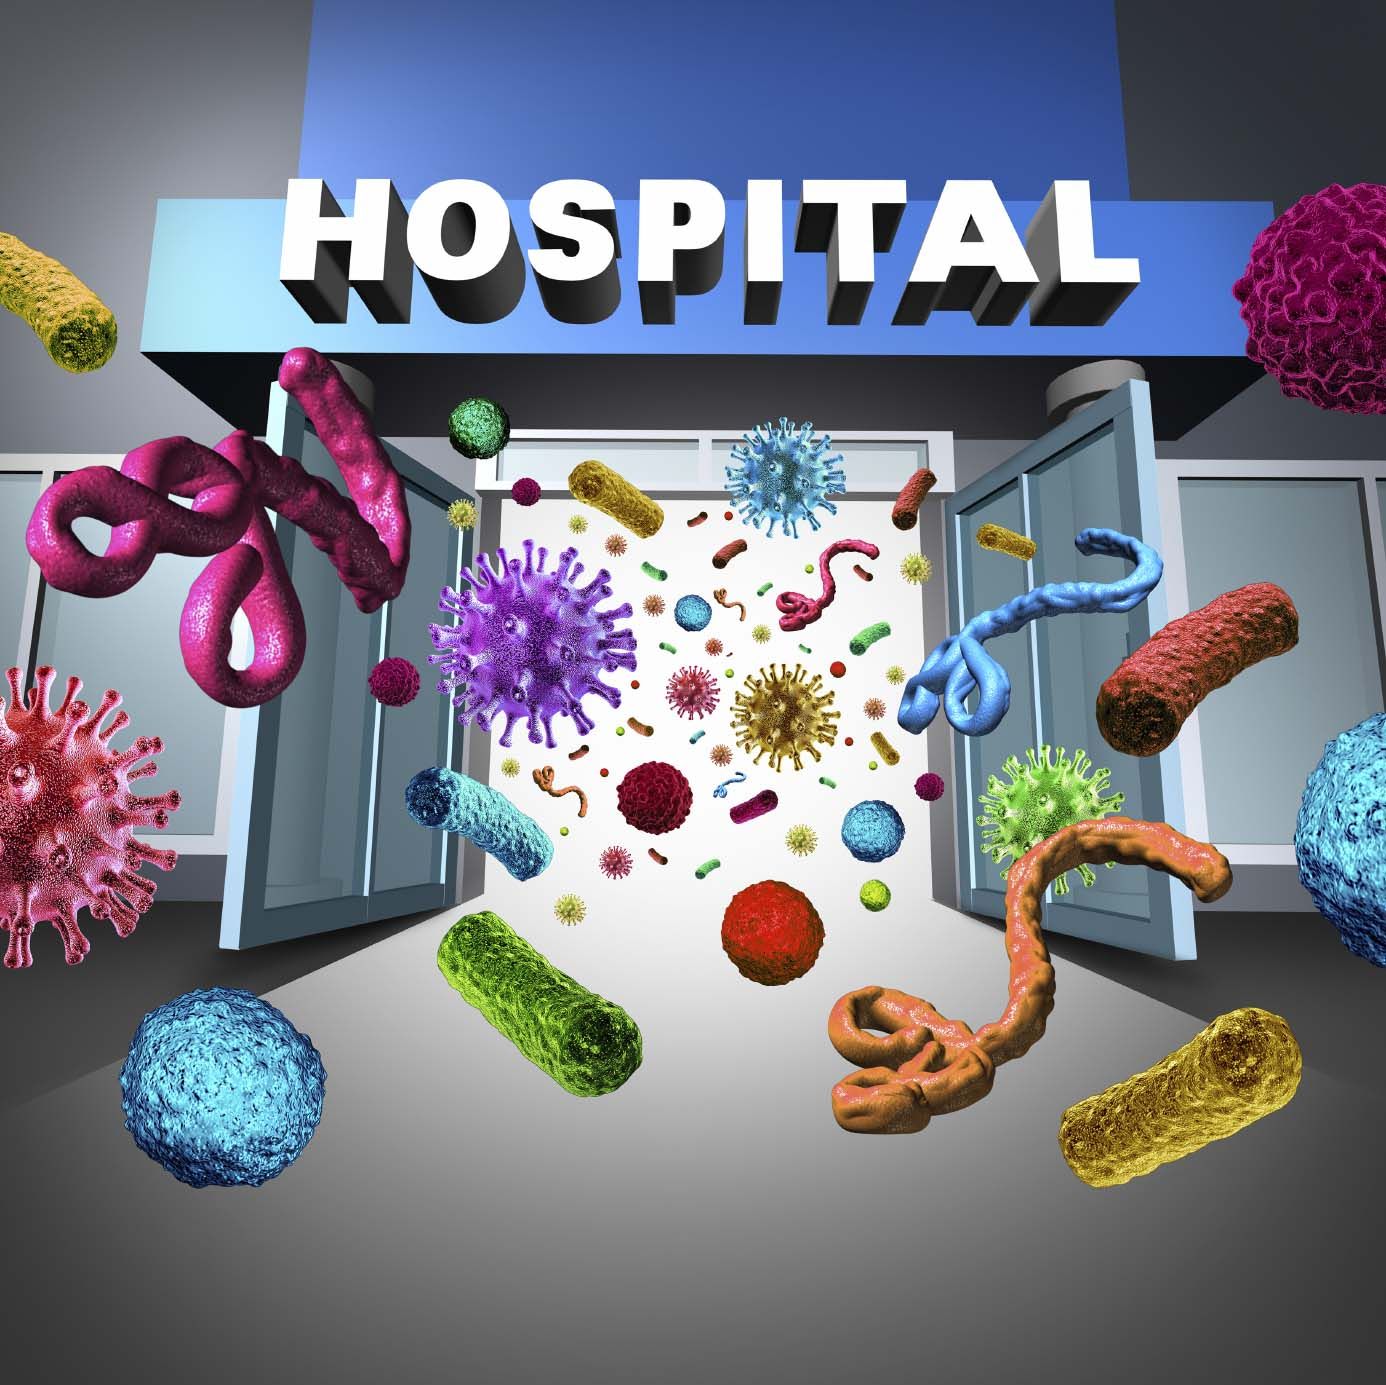 محاور المحاضرات العلمية للندوة العالمية حول صحية وعدوى المستشفيات